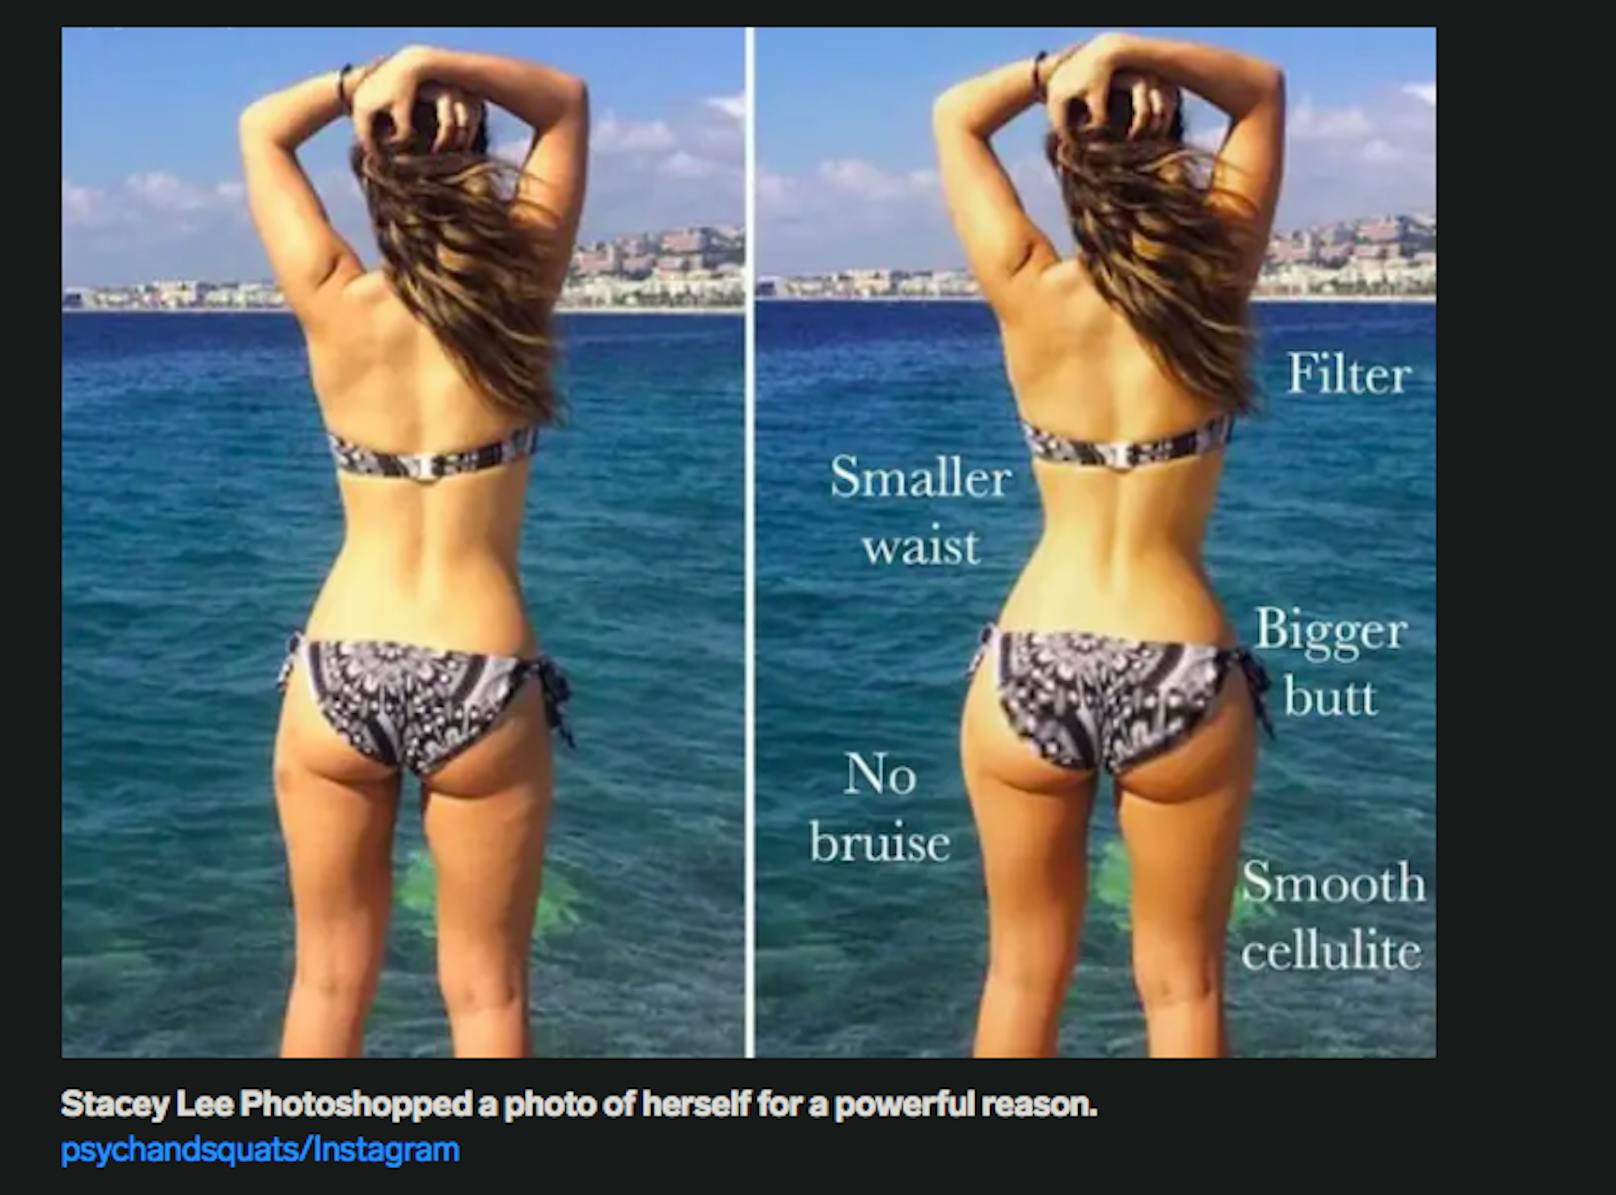 Influencer verändern Fotos, um darauf "perfekter" auszusehen.